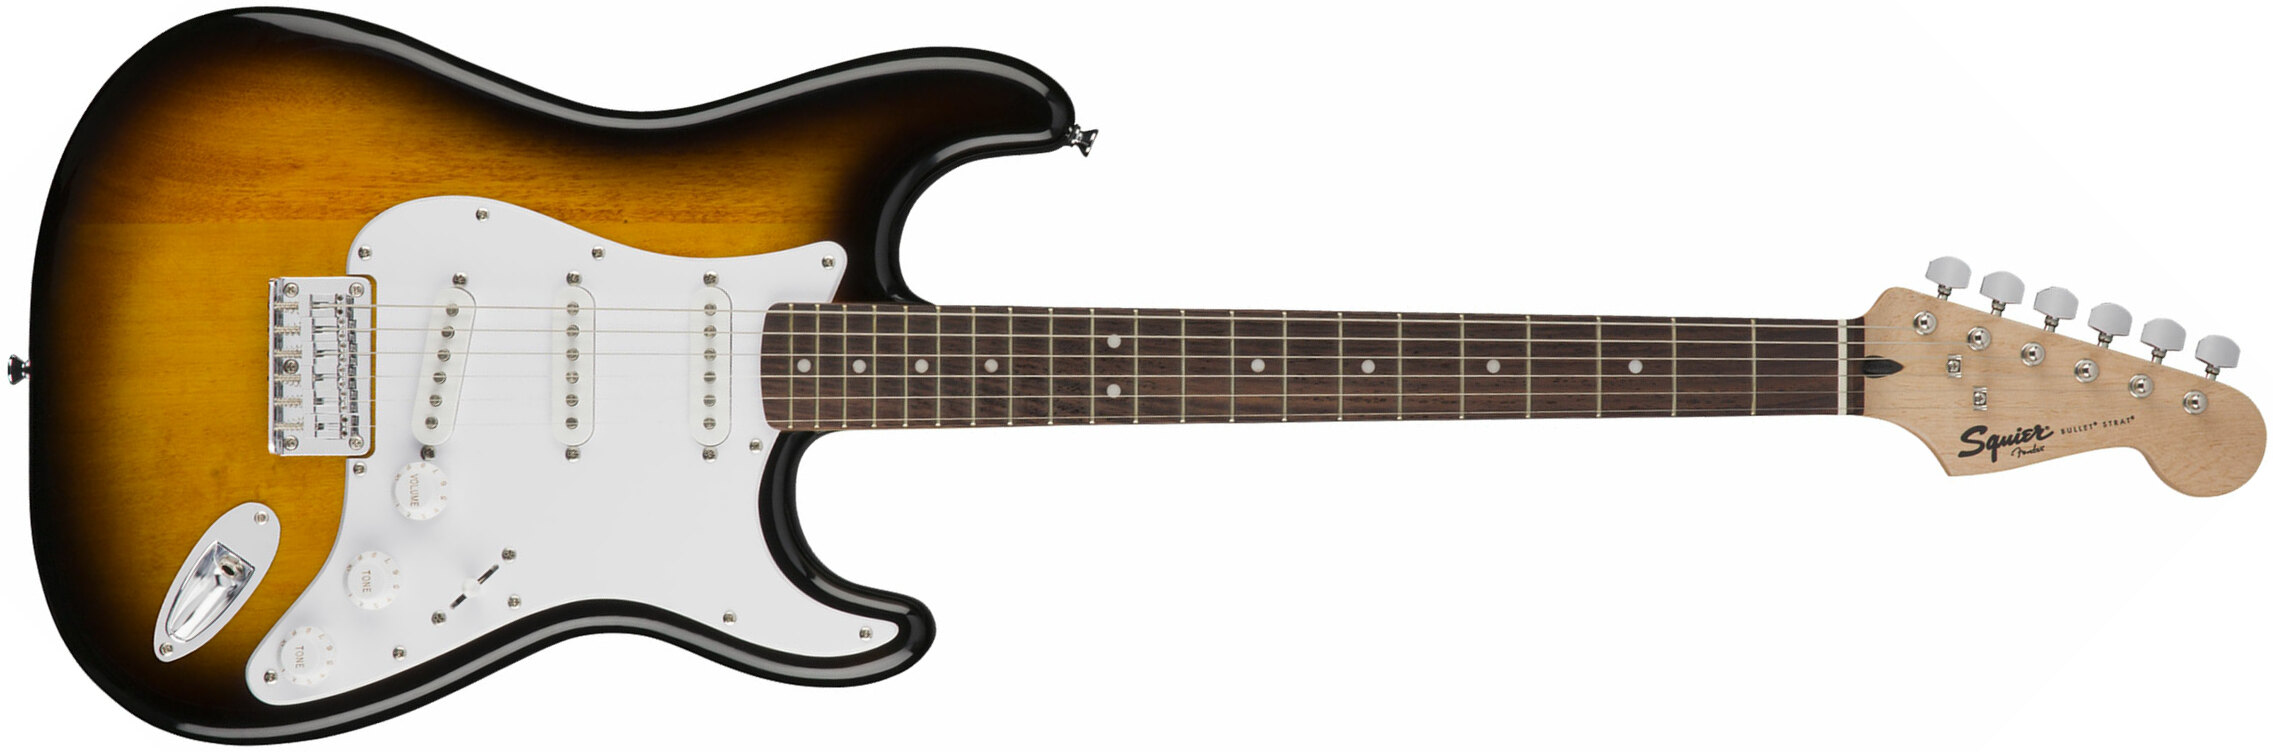 Squier Bullet Stratocaster Ht Sss Rw - Brown Sunburst - Guitarra eléctrica con forma de str. - Main picture